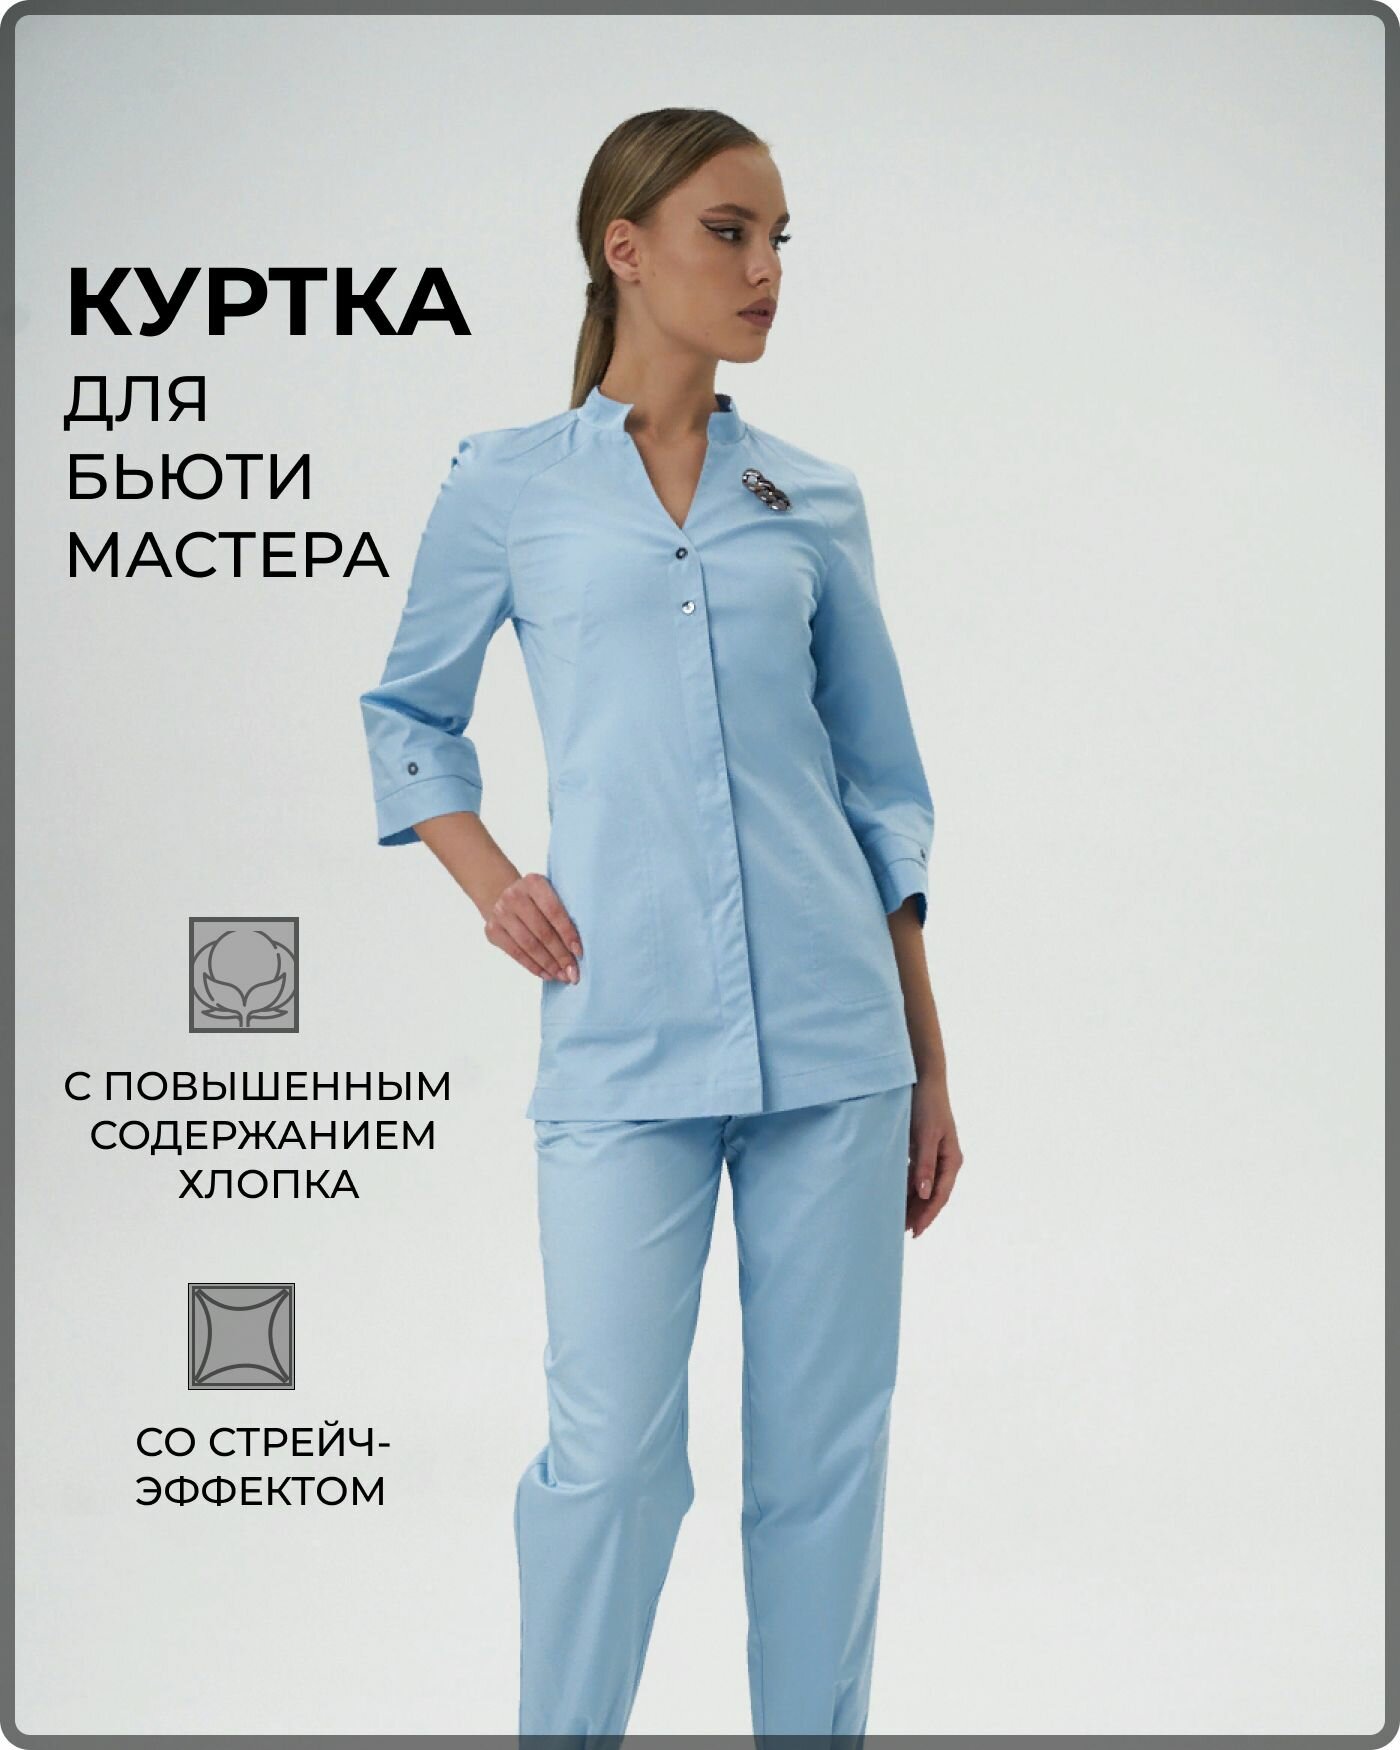 Куртка медицинская женская для бьюти-мастера медицинский костюм голубой со стрейч-эффектом размер 48 рукав 3/4